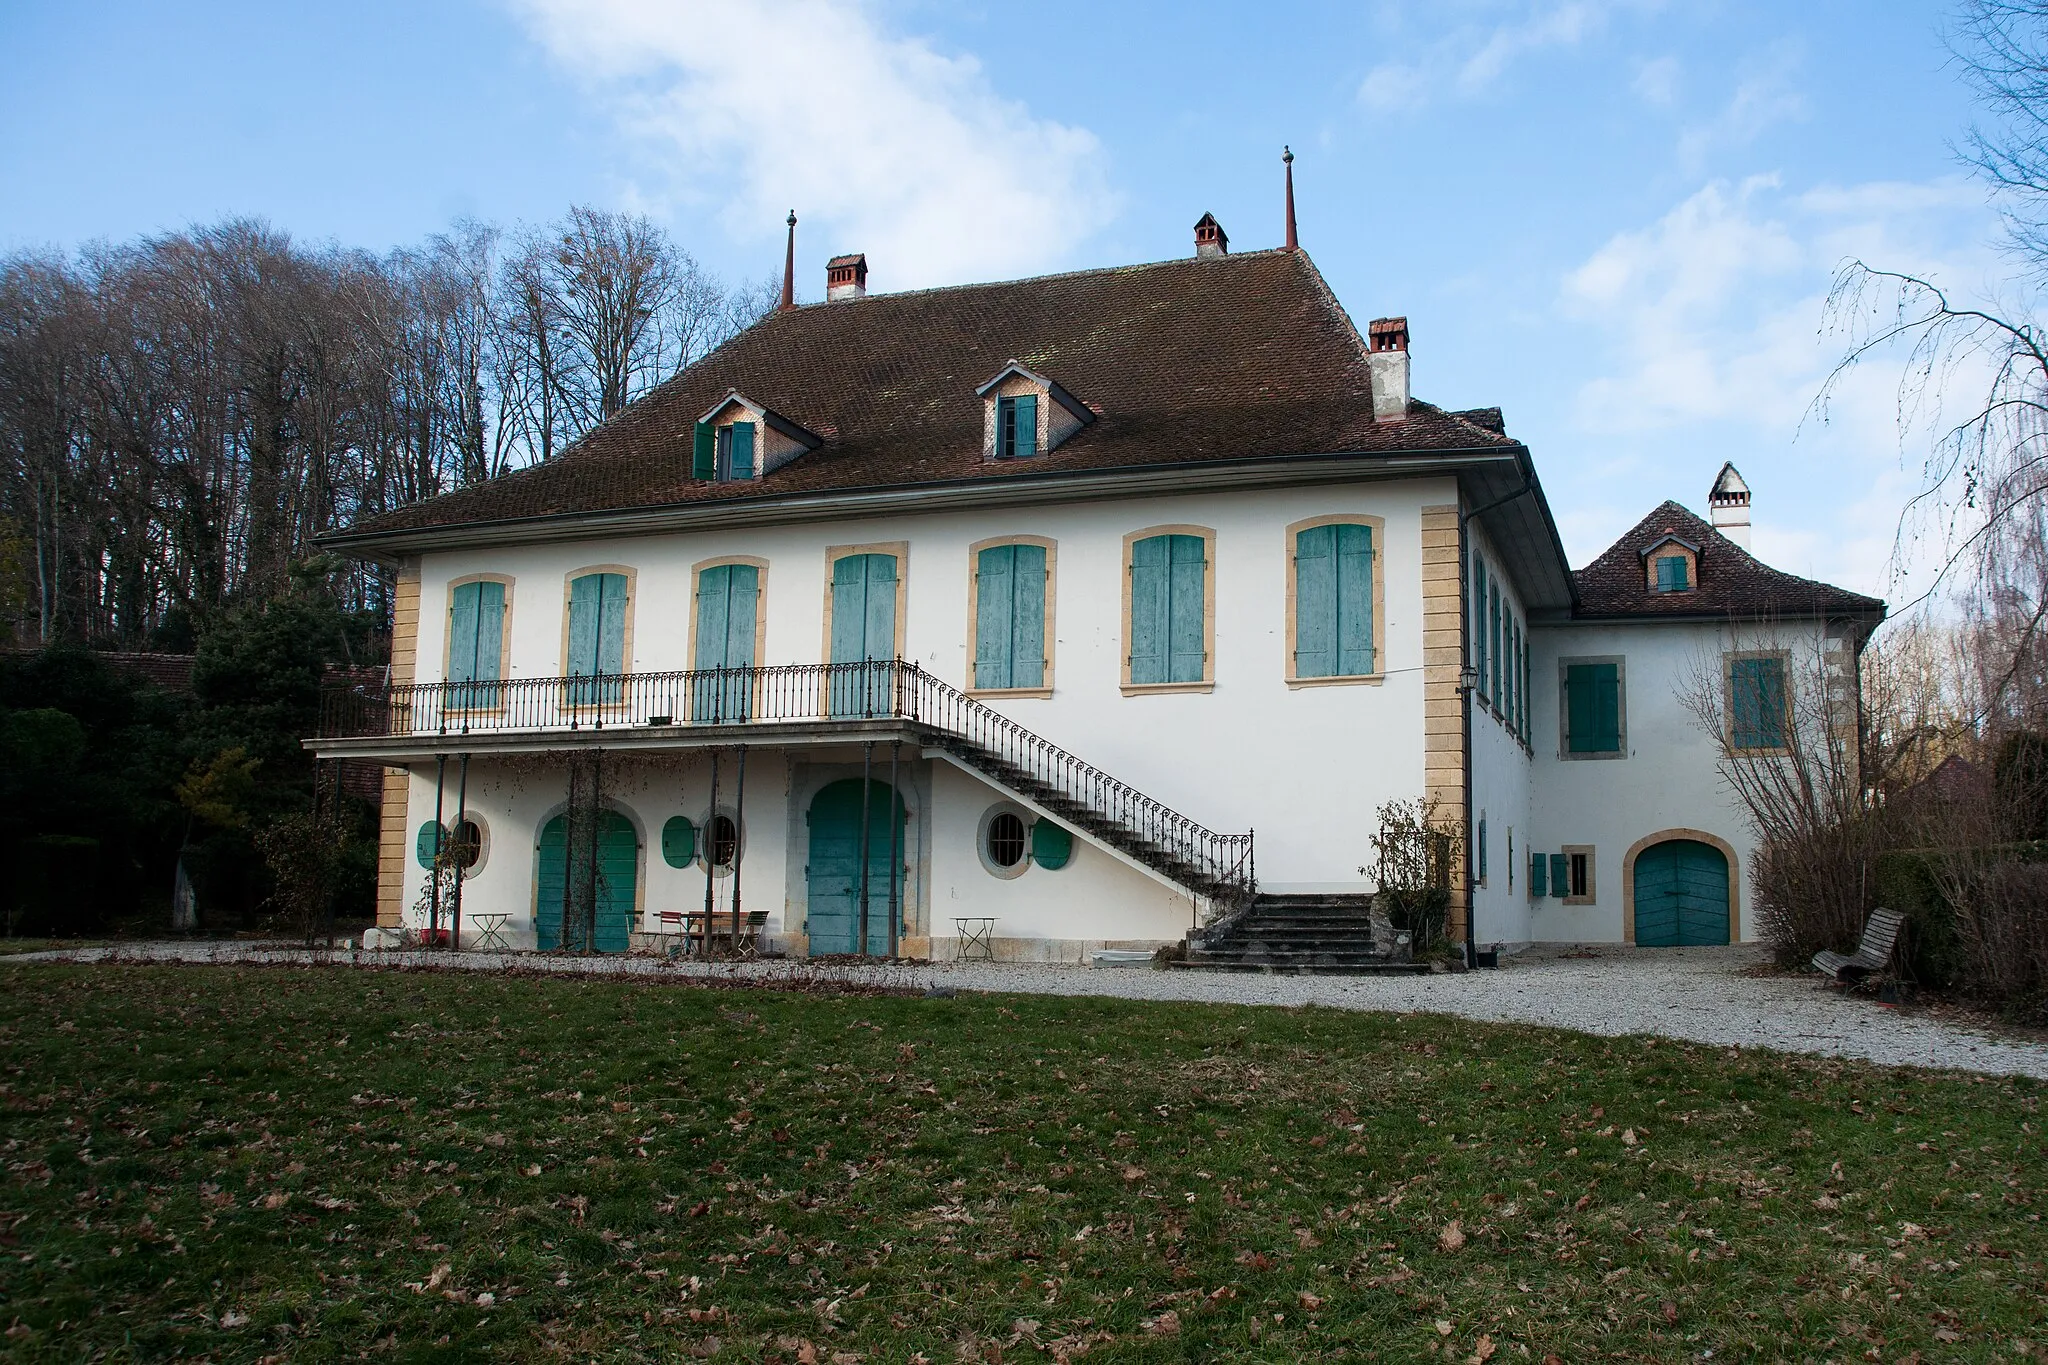 Photo showing: Château de Guévaux, canton de Vaud, Suisse.